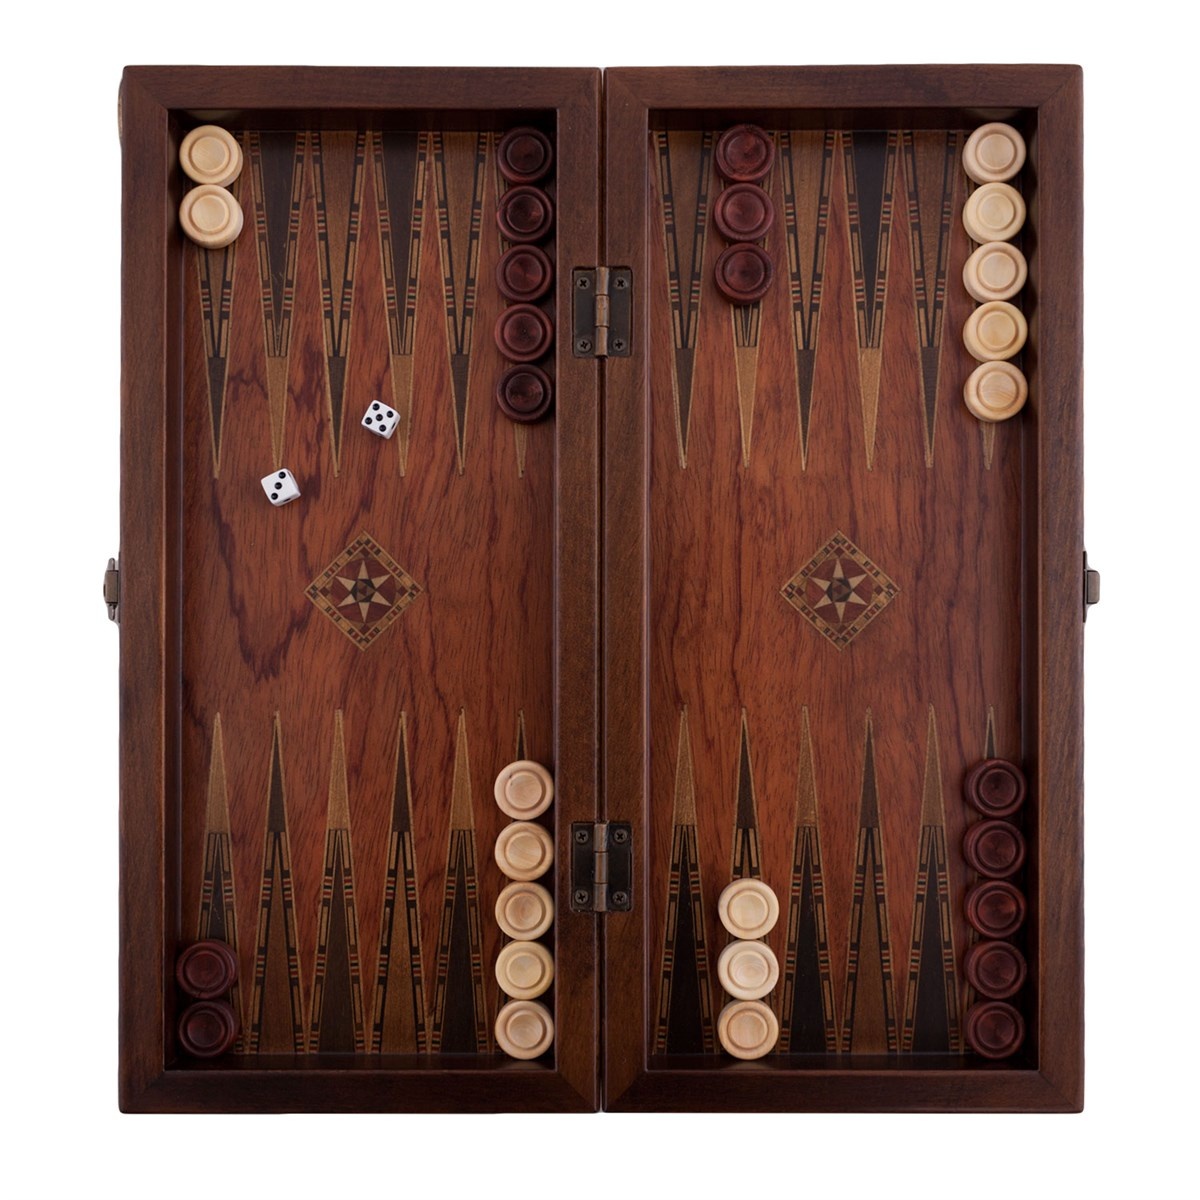 Helena Wood Art Handgemaakte Houten Backgammon Speelset van Hoge Kwaliteit - Tavla - 100% Hout - Luxe uitgave - TricTrac - 36 x 17 cm